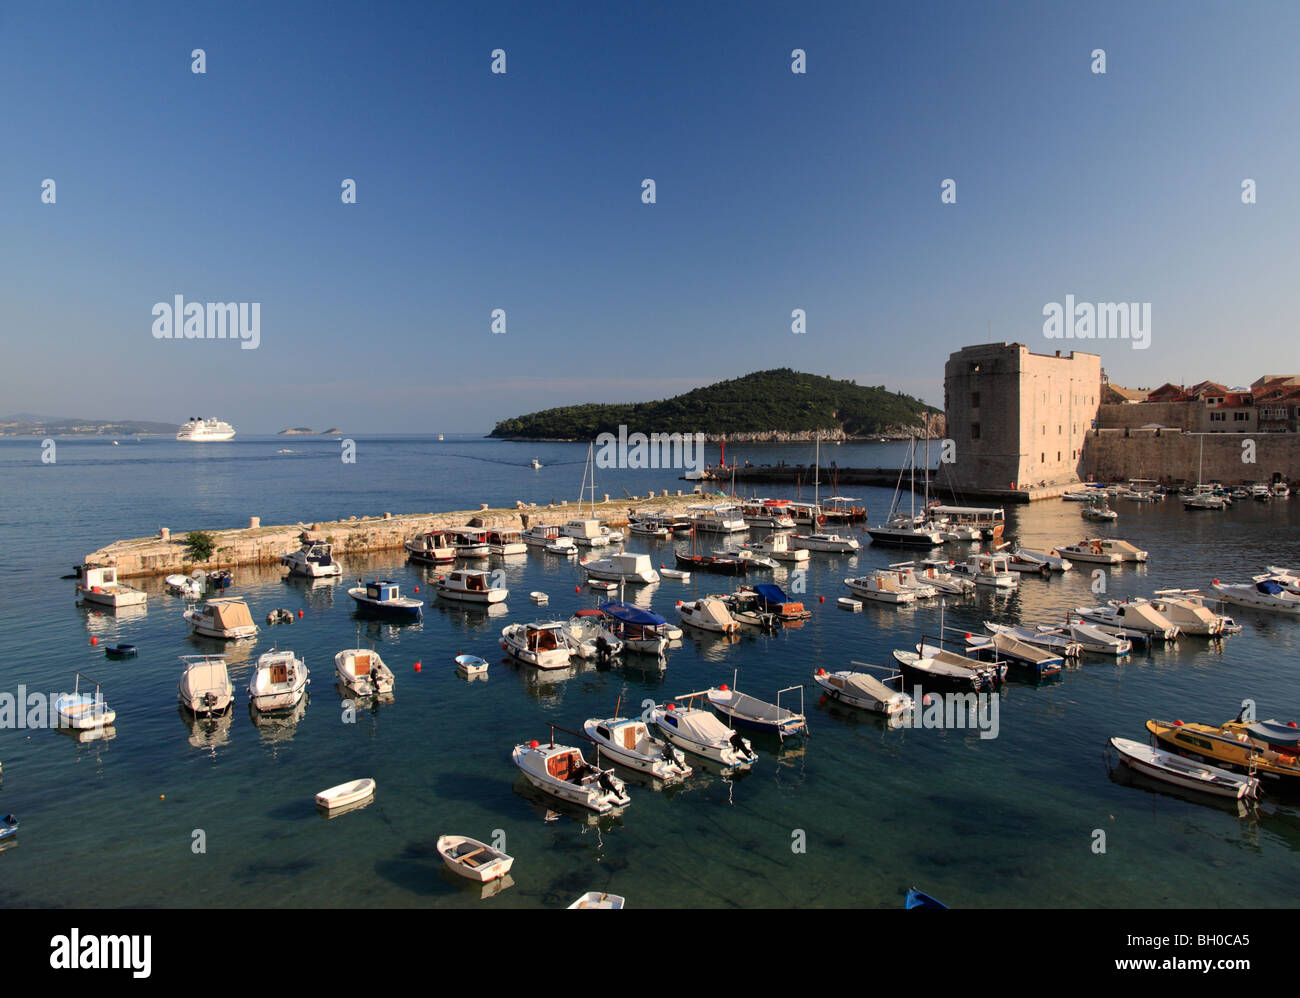 Le Port de Dubrovnik avec de petits bateaux de pêche et grand bateau de croisière amarré dans la baie Croatie Banque D'Images